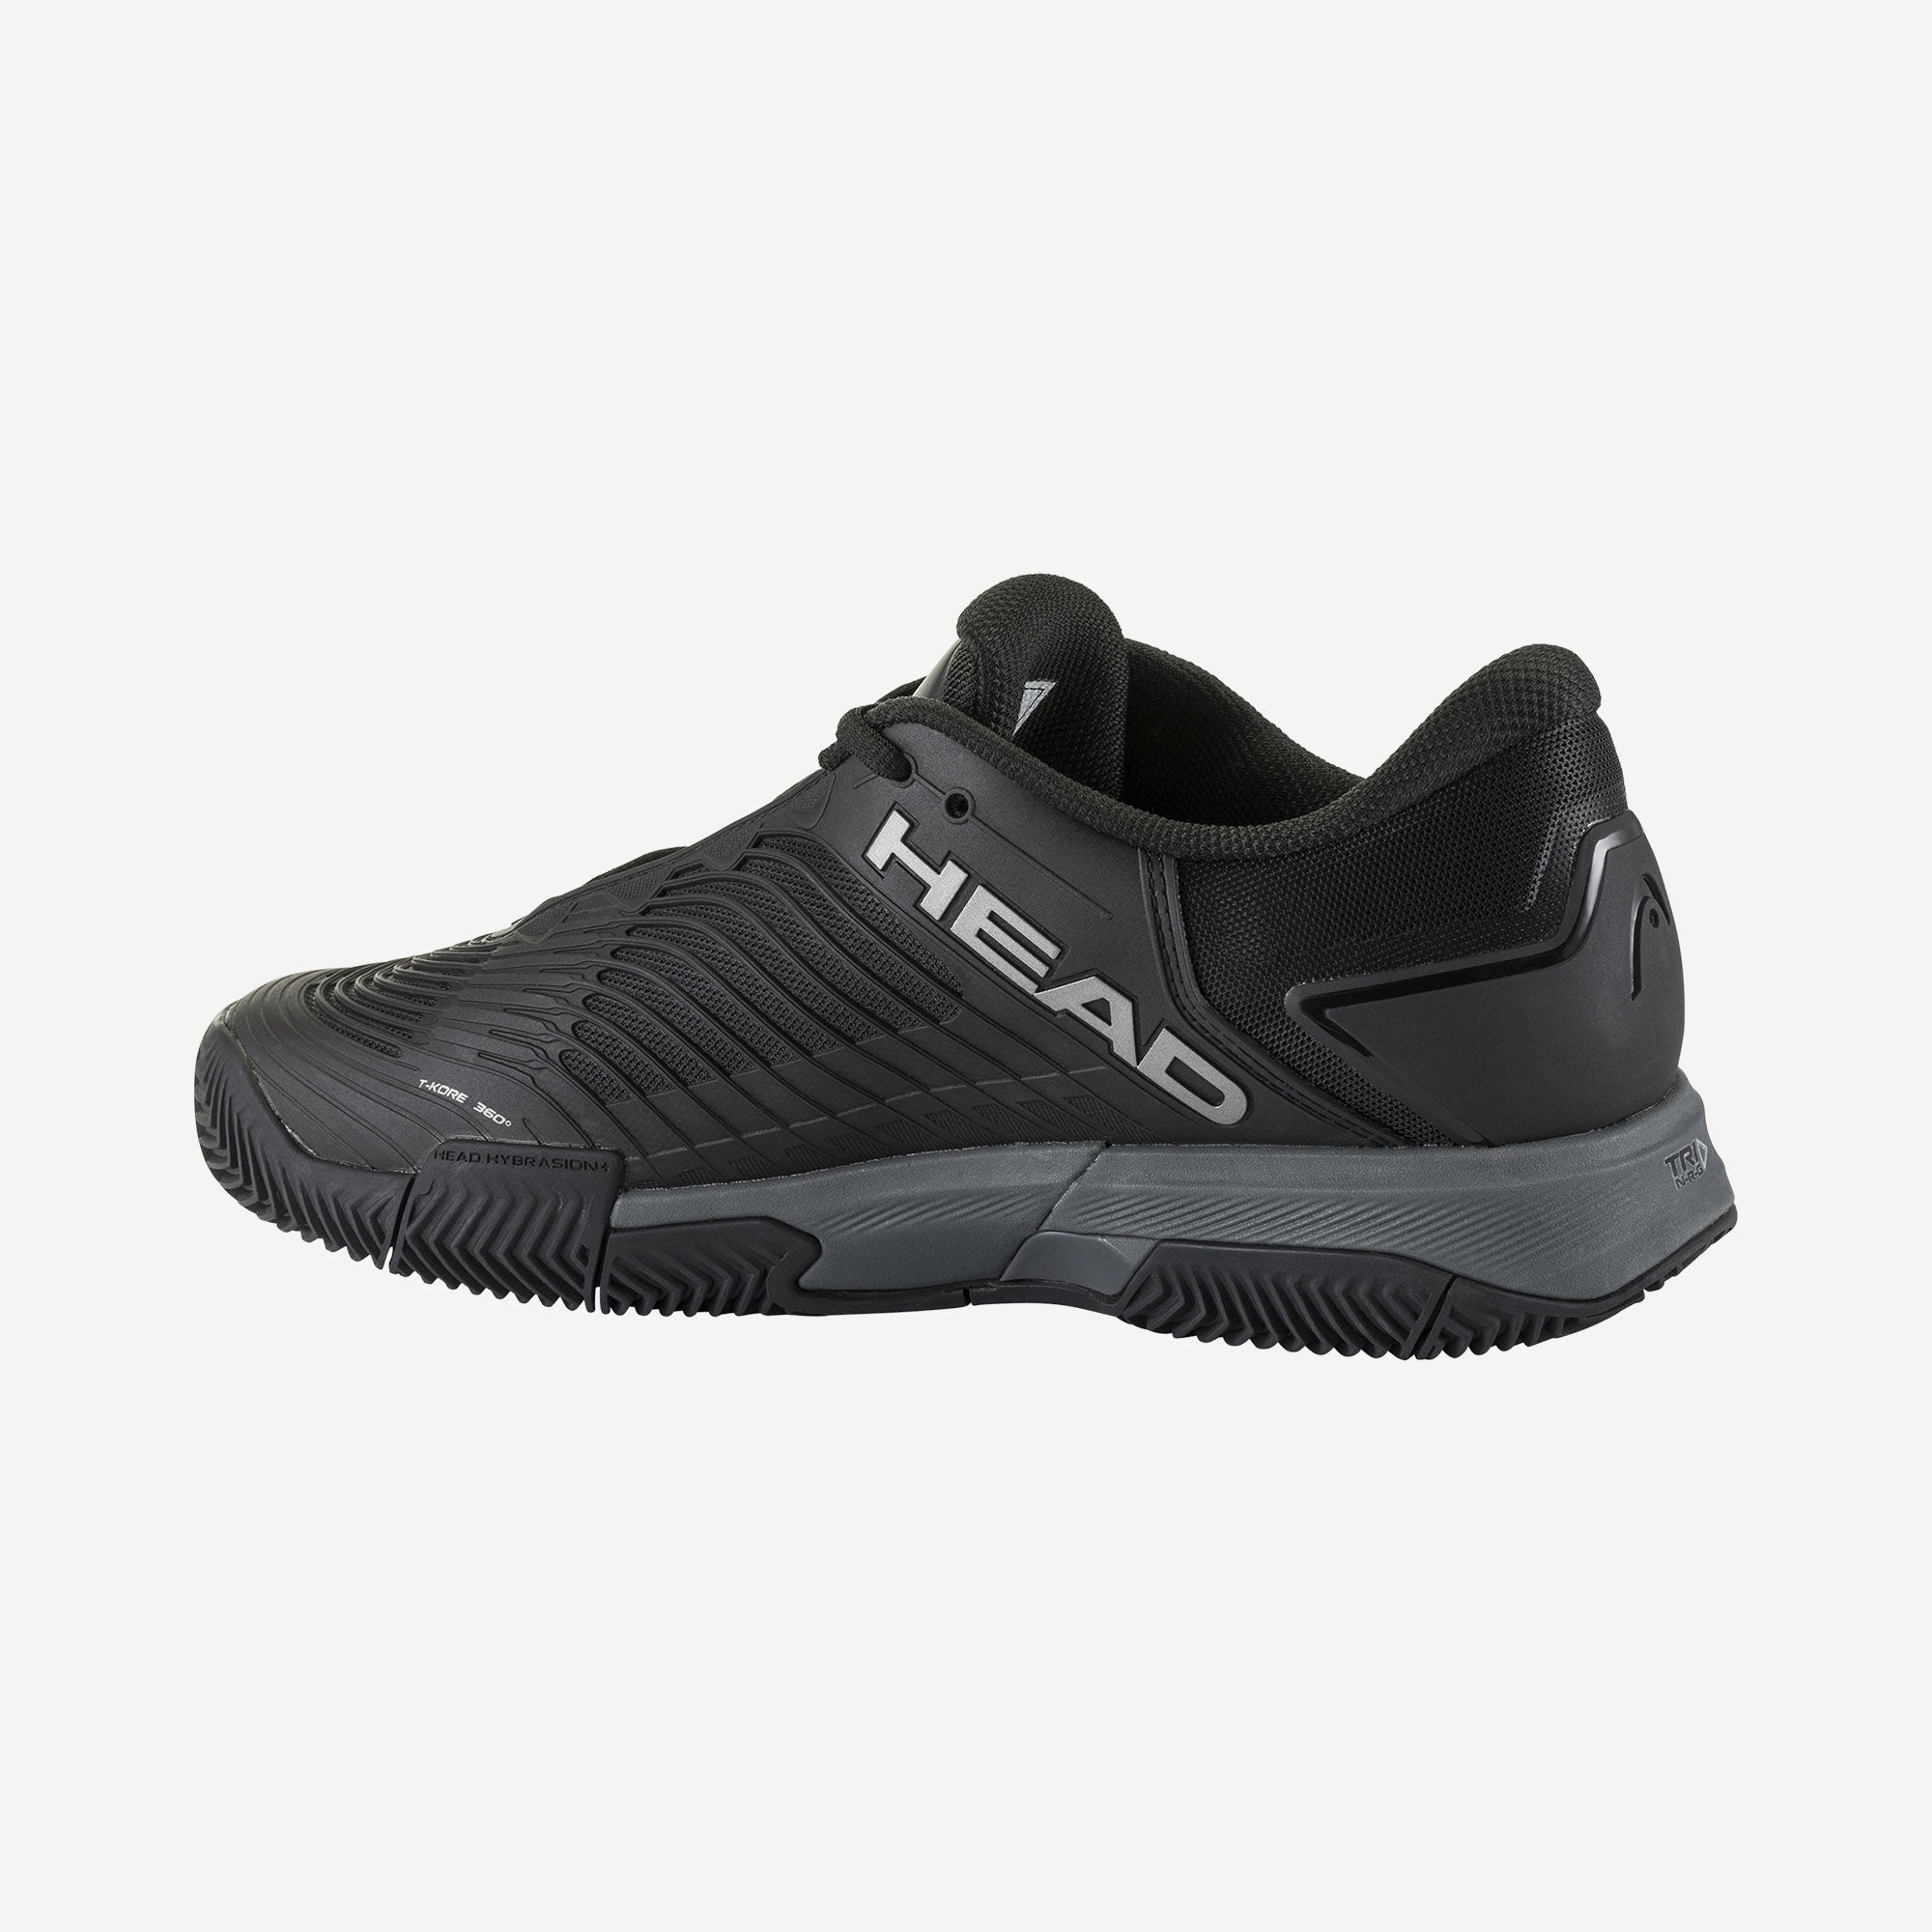 HEAD Revolt Pro 4.5 Men's Clay Court Tennis Shoes - Black (3)